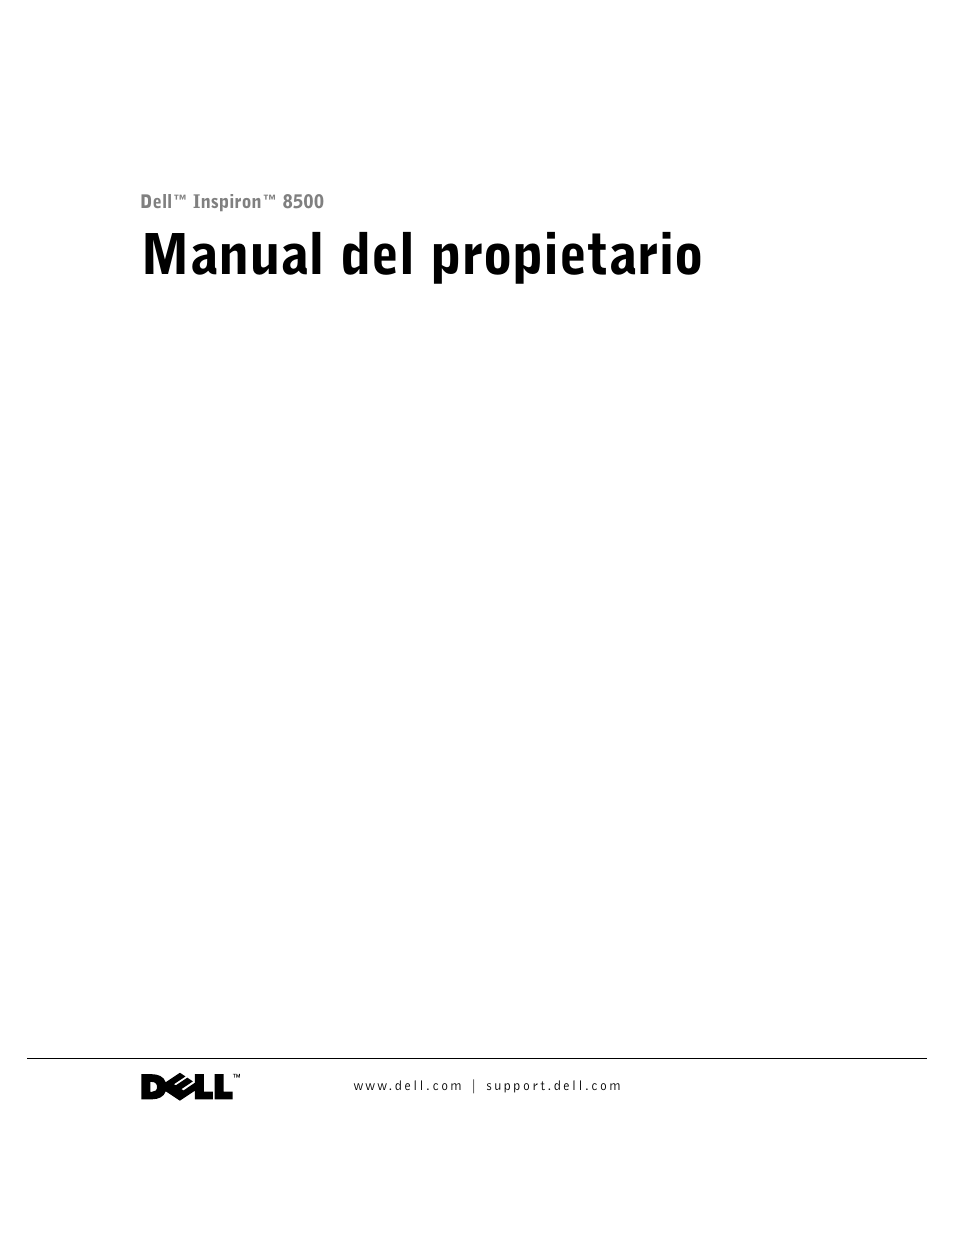 Dell Inspiron 8500 Manual del usuario | Páginas: 190